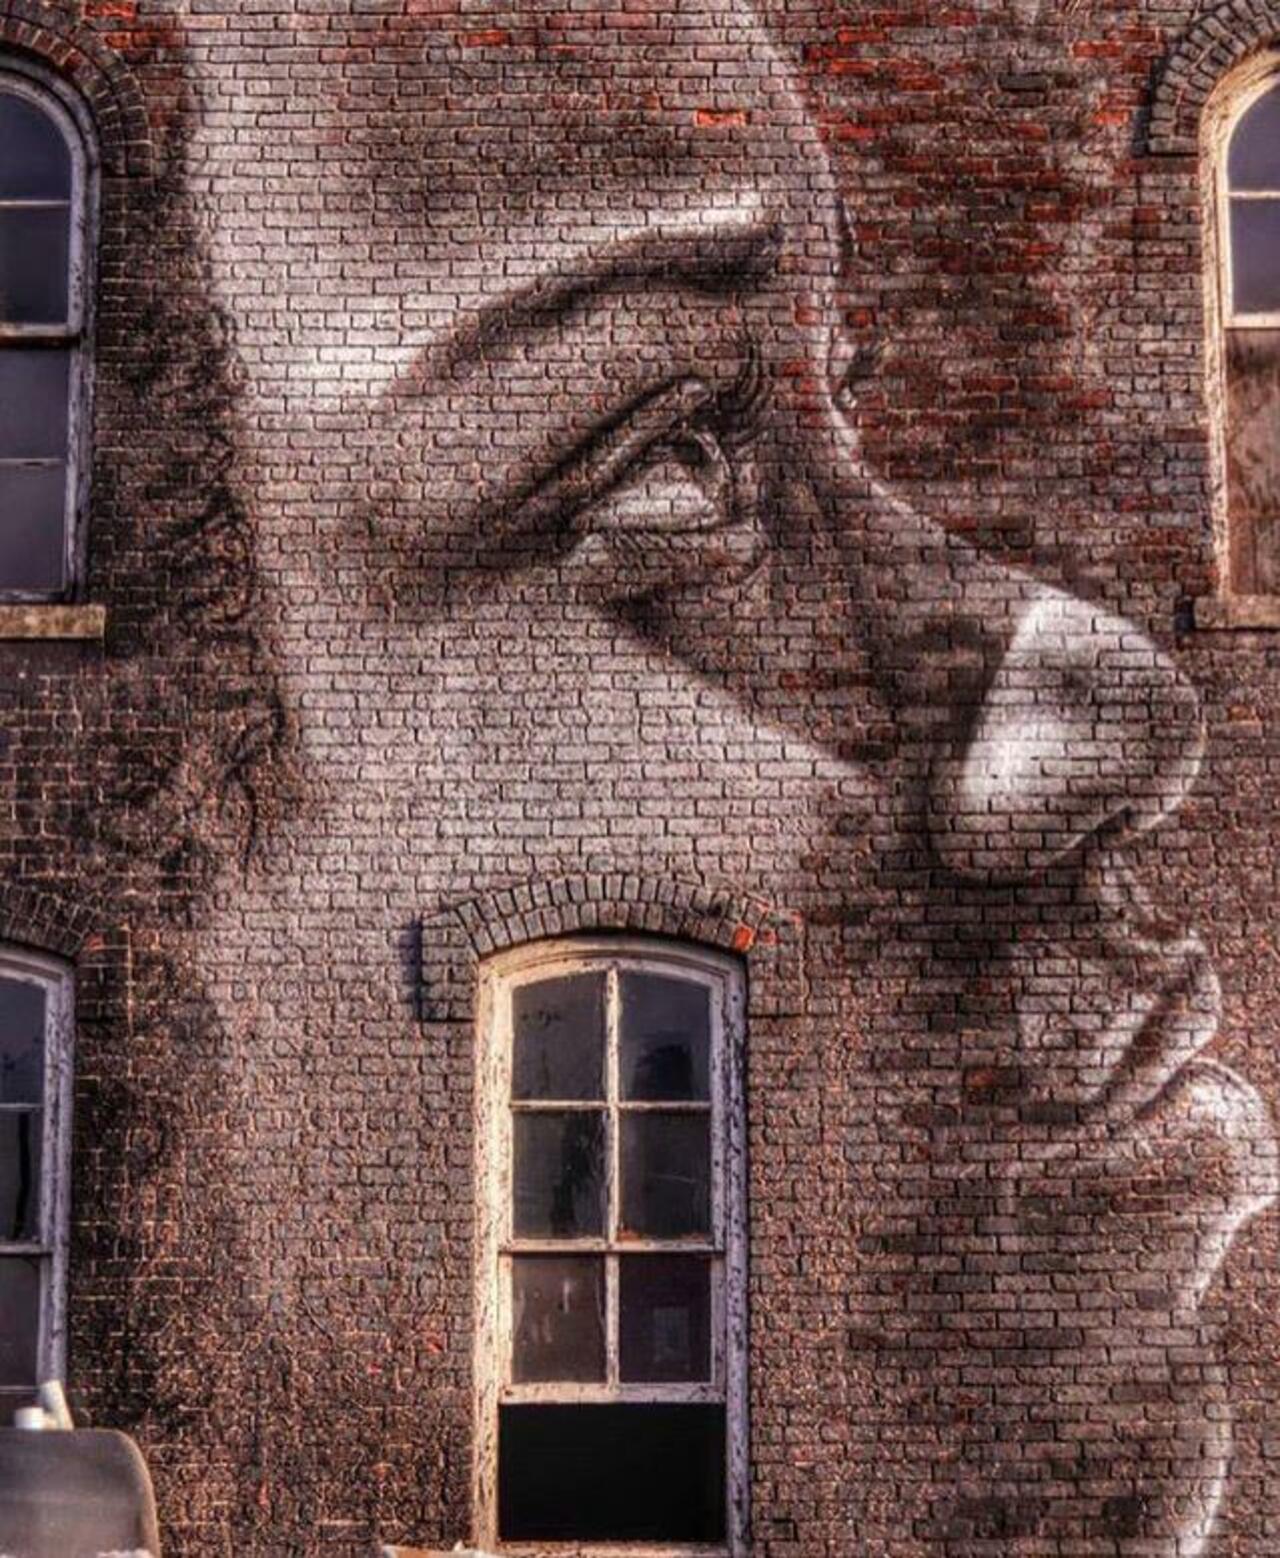 https://goo.gl/t4fpx2 RT GoogleStreetArt: New Street Art by RONE

#art #graffiti #mural #streetart https://t.co/kWaErsoatg